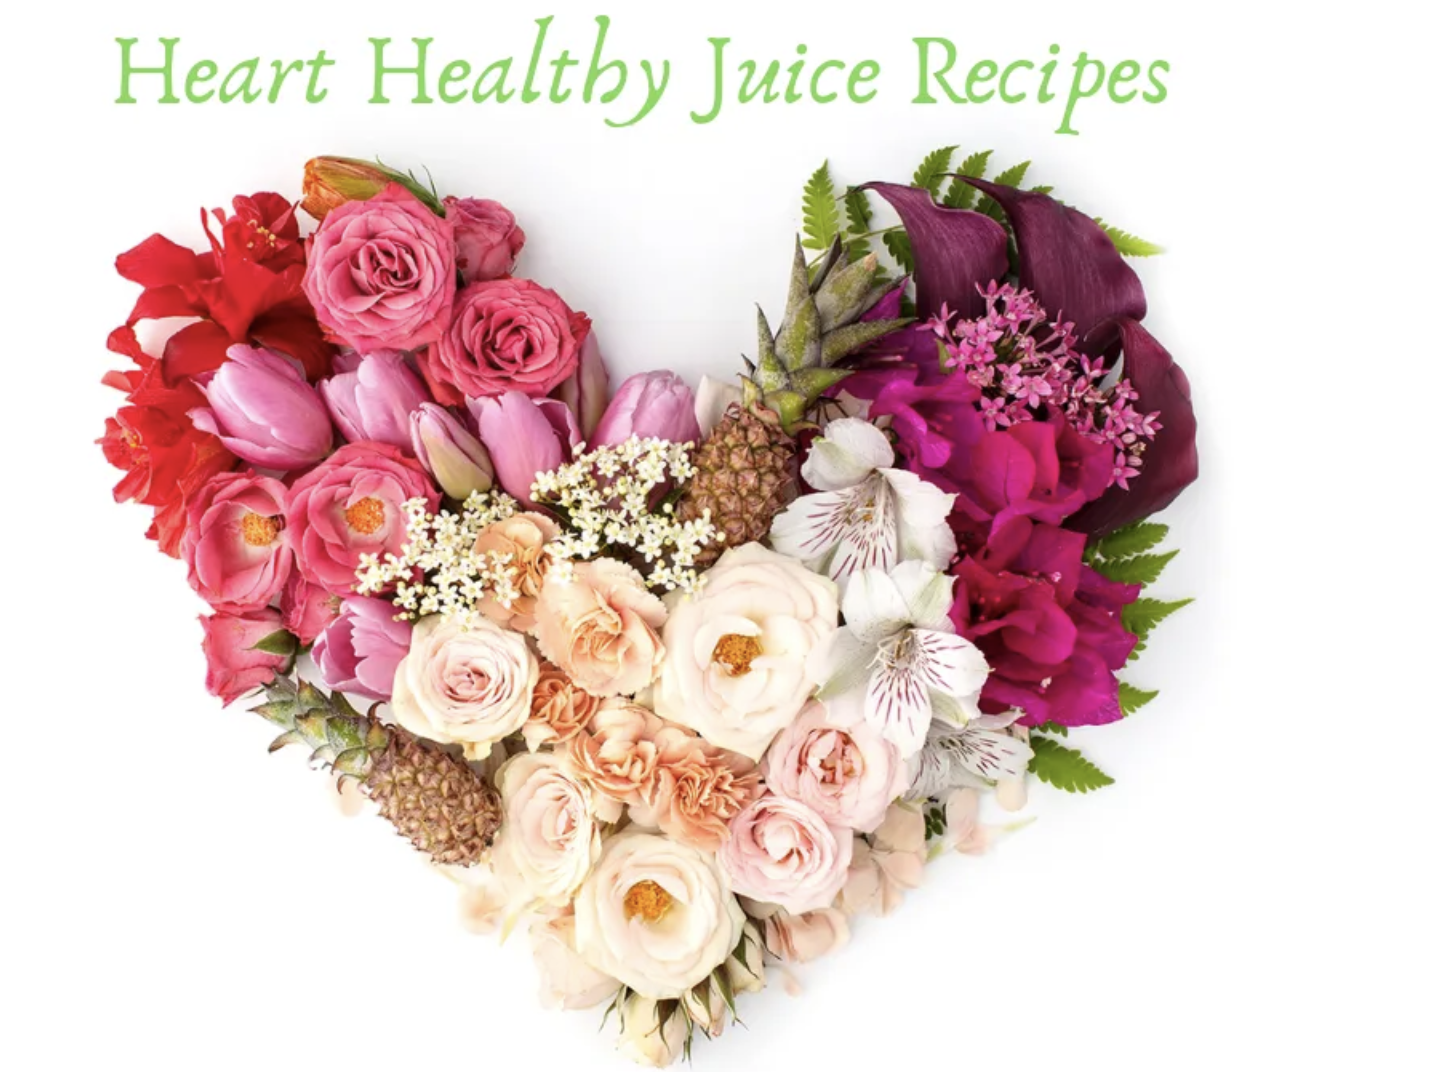 Heart Healthy Juice Recipes